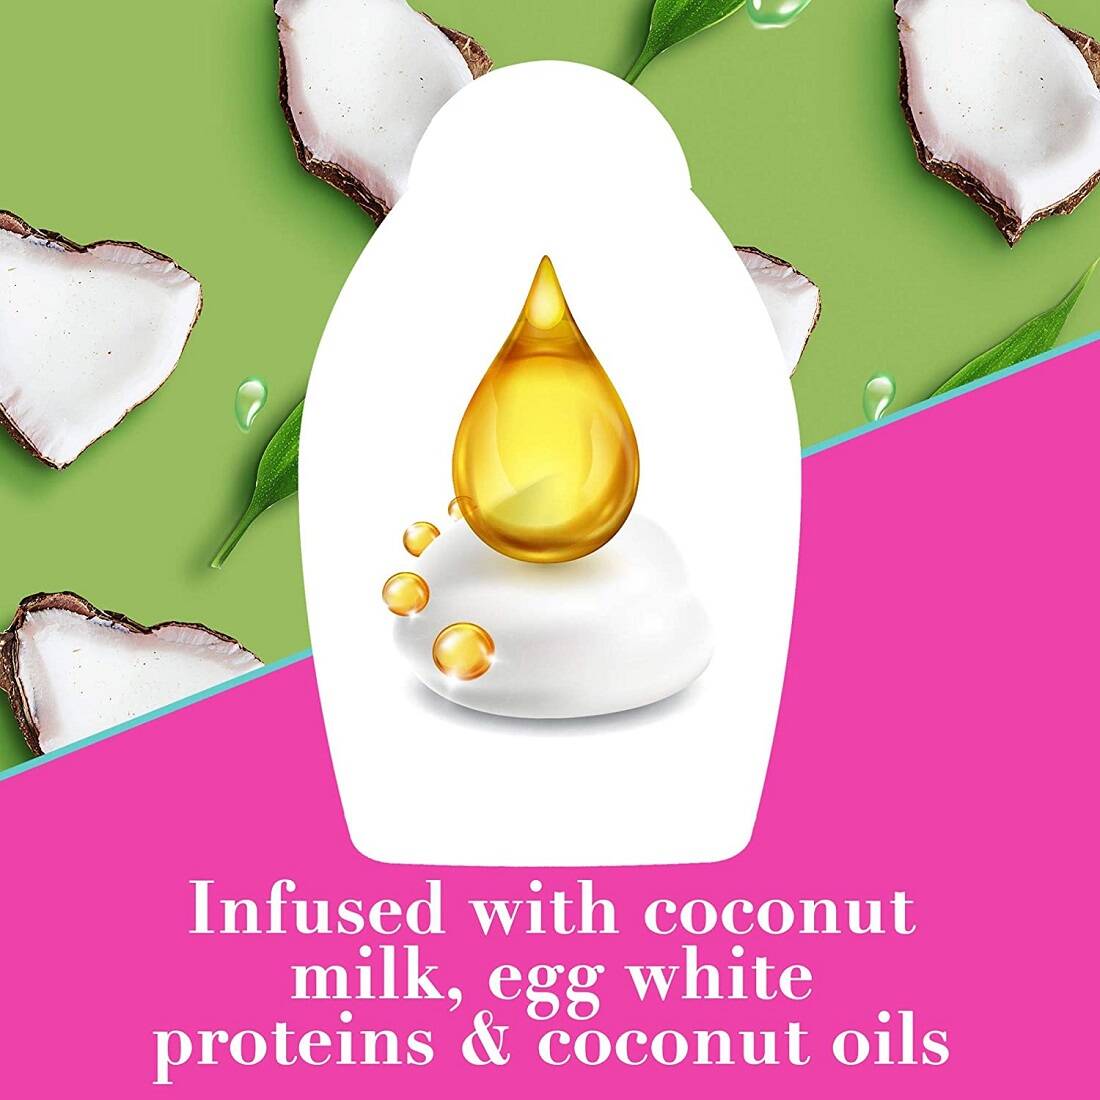 سرم مو شیر نارگیل او جی ایکس اصل (کوکونات میلک) ضد موخوره و شکنندگی | OGX Nourishing + Coconut Milk Anti-Breakage Serum 100ml